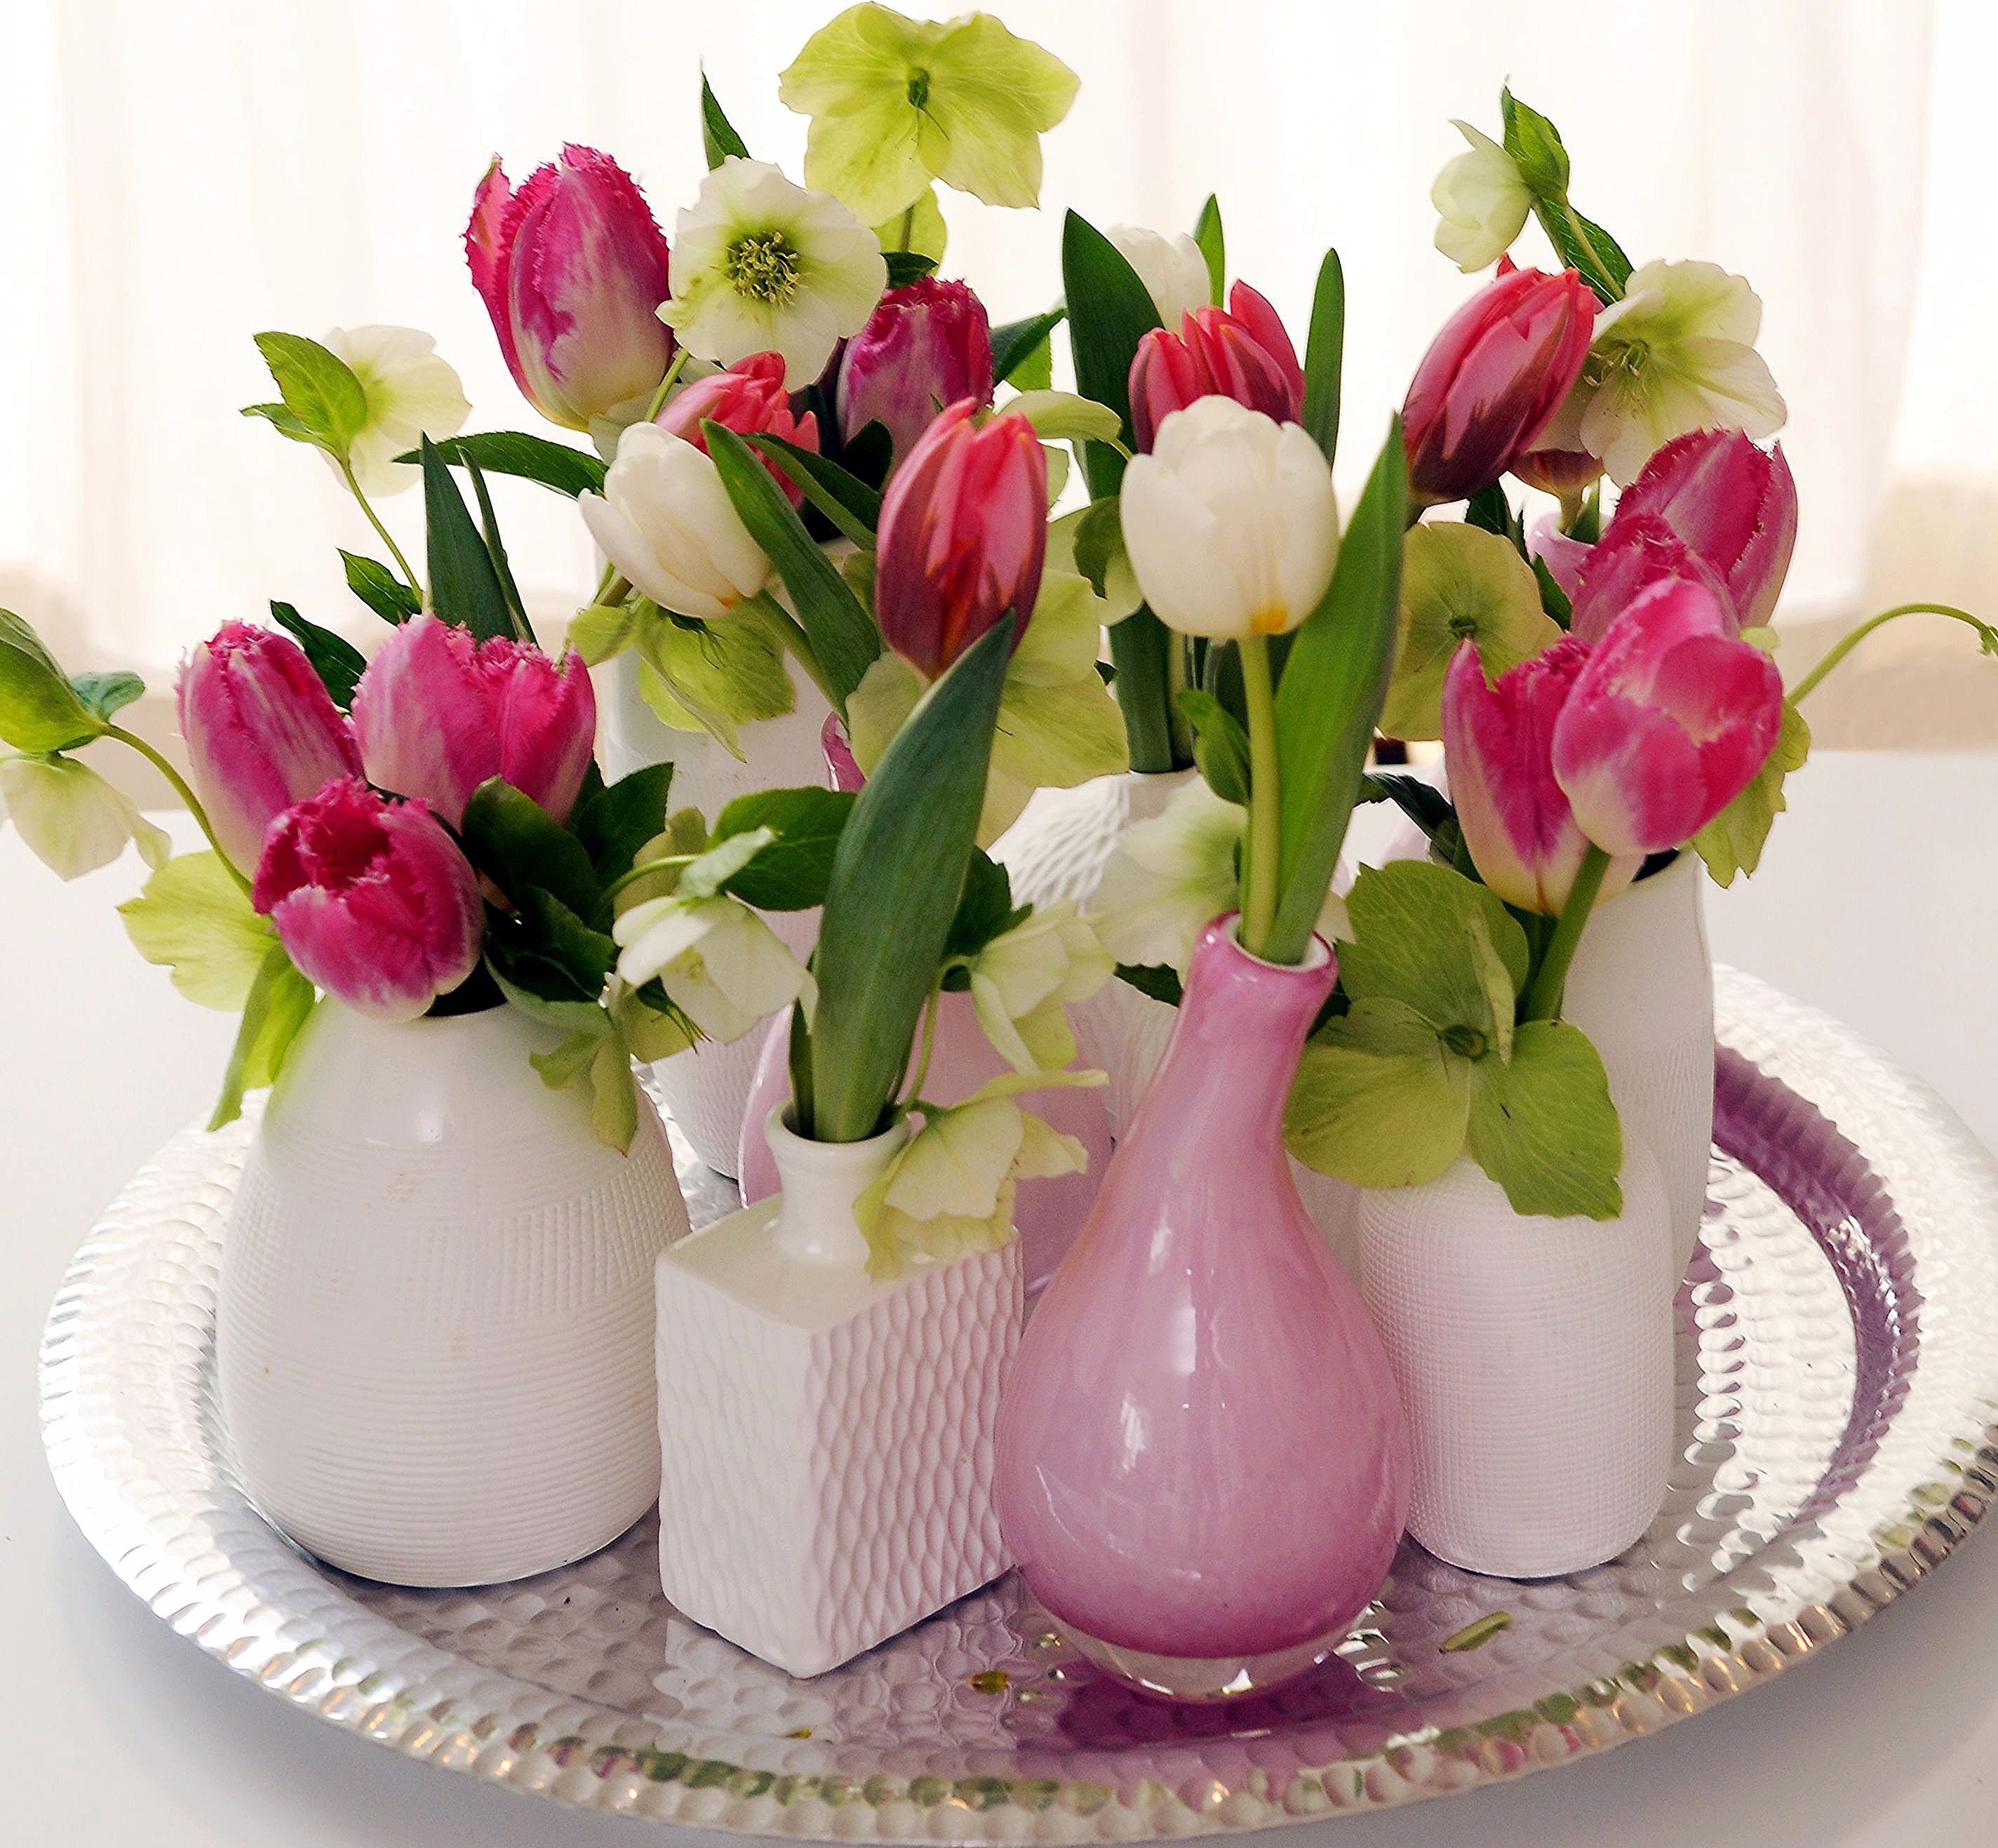 Как сохранить дольше свежие тюльпаны в вазе. Весенние композиции из цветов. Цветы в вазе. Тюльпаны в вазе. Букет тюльпанов в вазе.